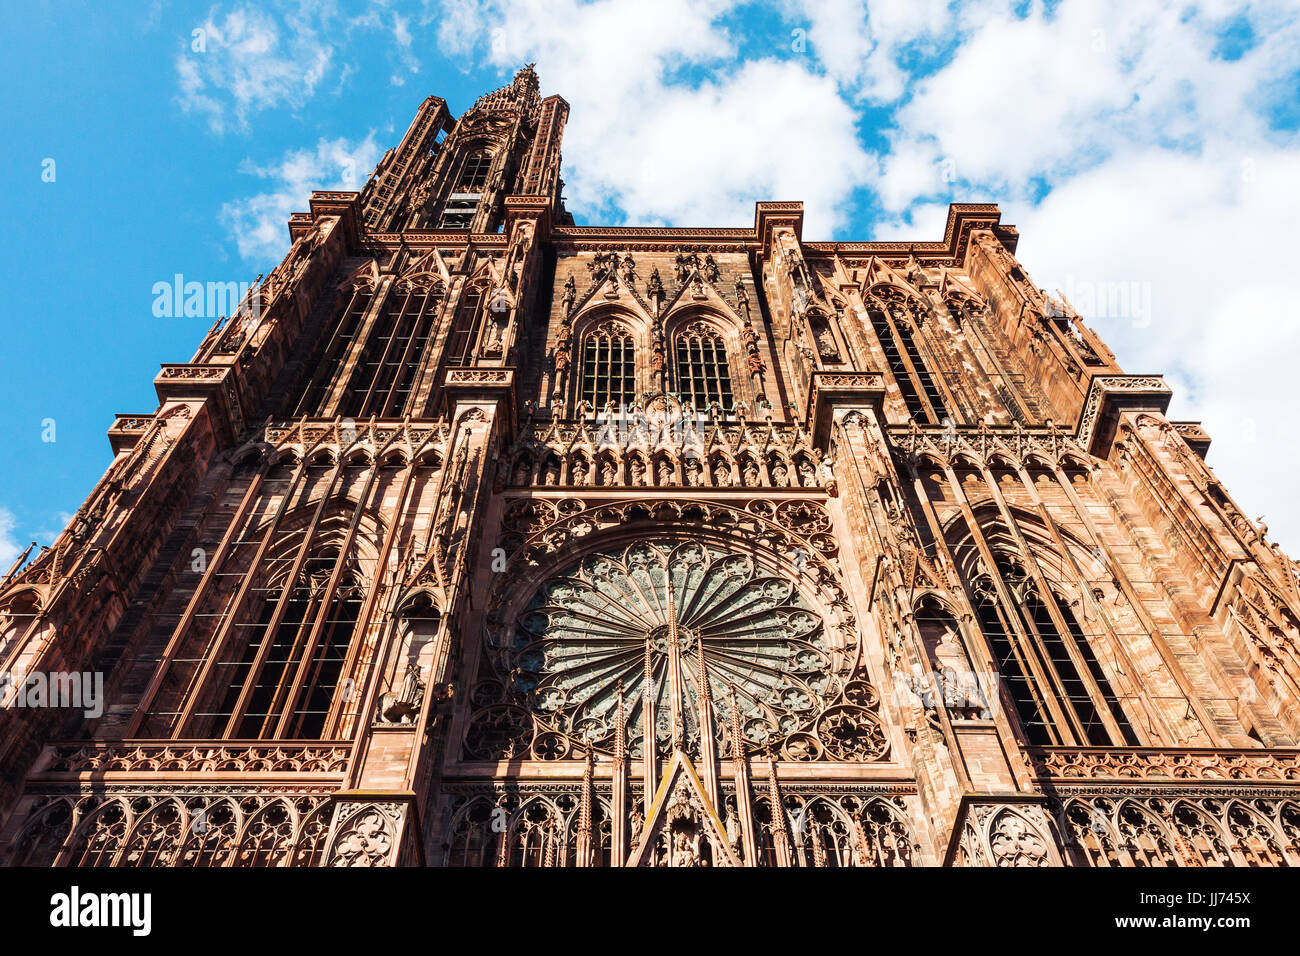 La cattedrale di Notre Dame cattedrale gotica facciata a Strasburgo, in Francia. Vista dal basso angolo basso dell'immagine. Foto Stock